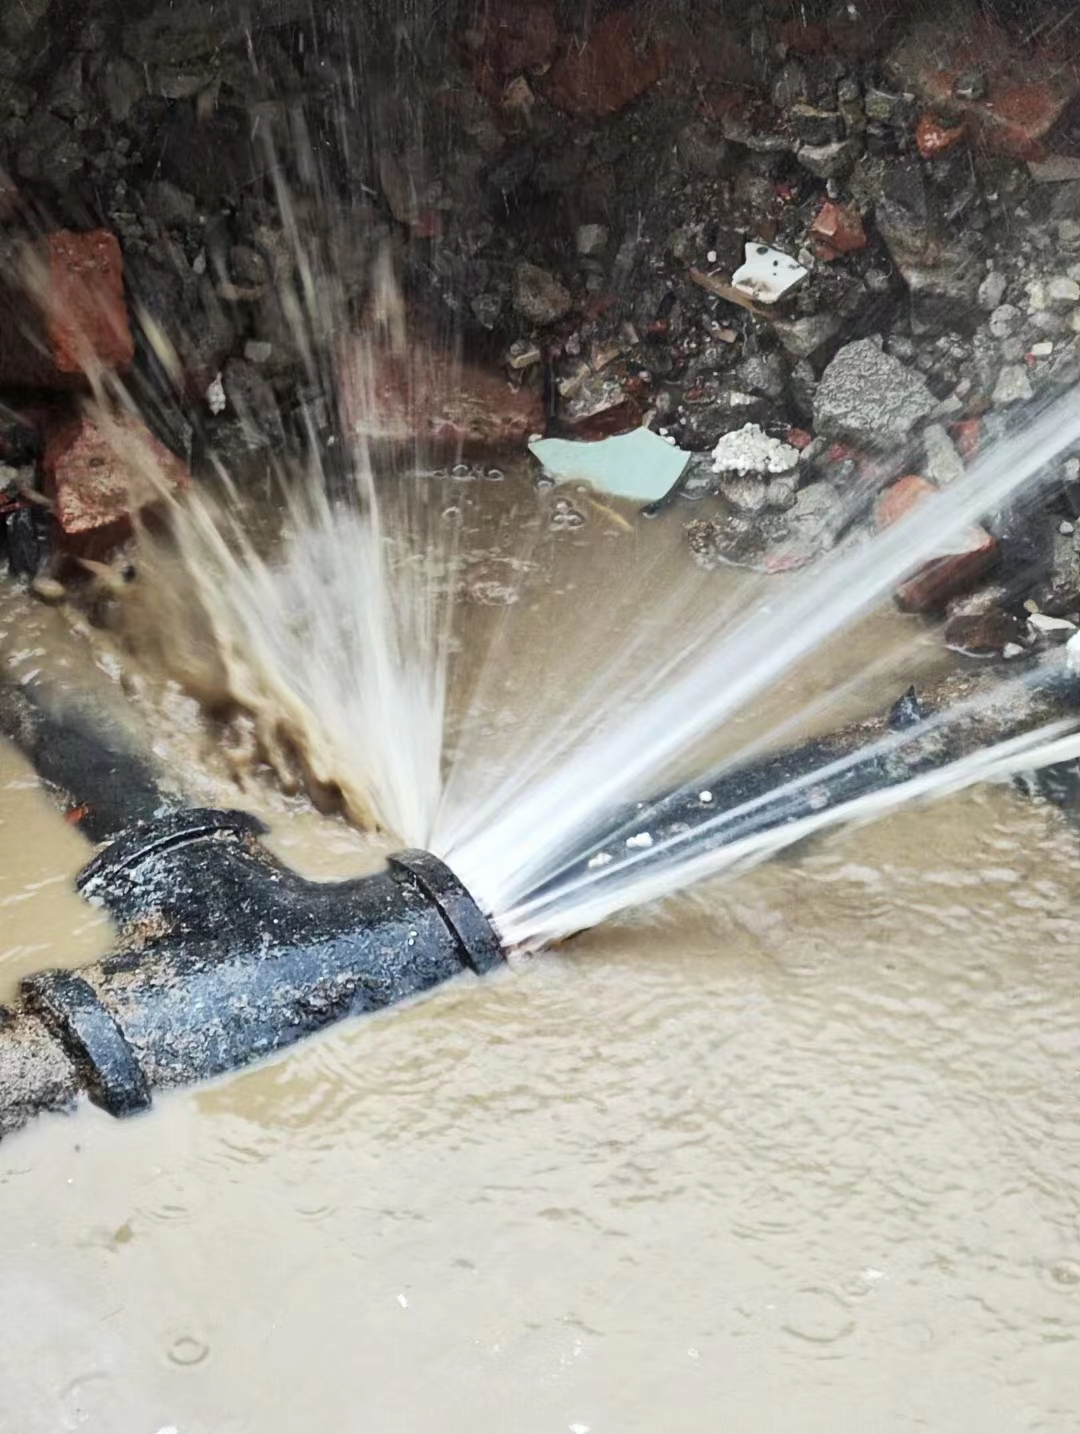 埋地水管漏水检漏点，地下管网电缆不明探测探寻